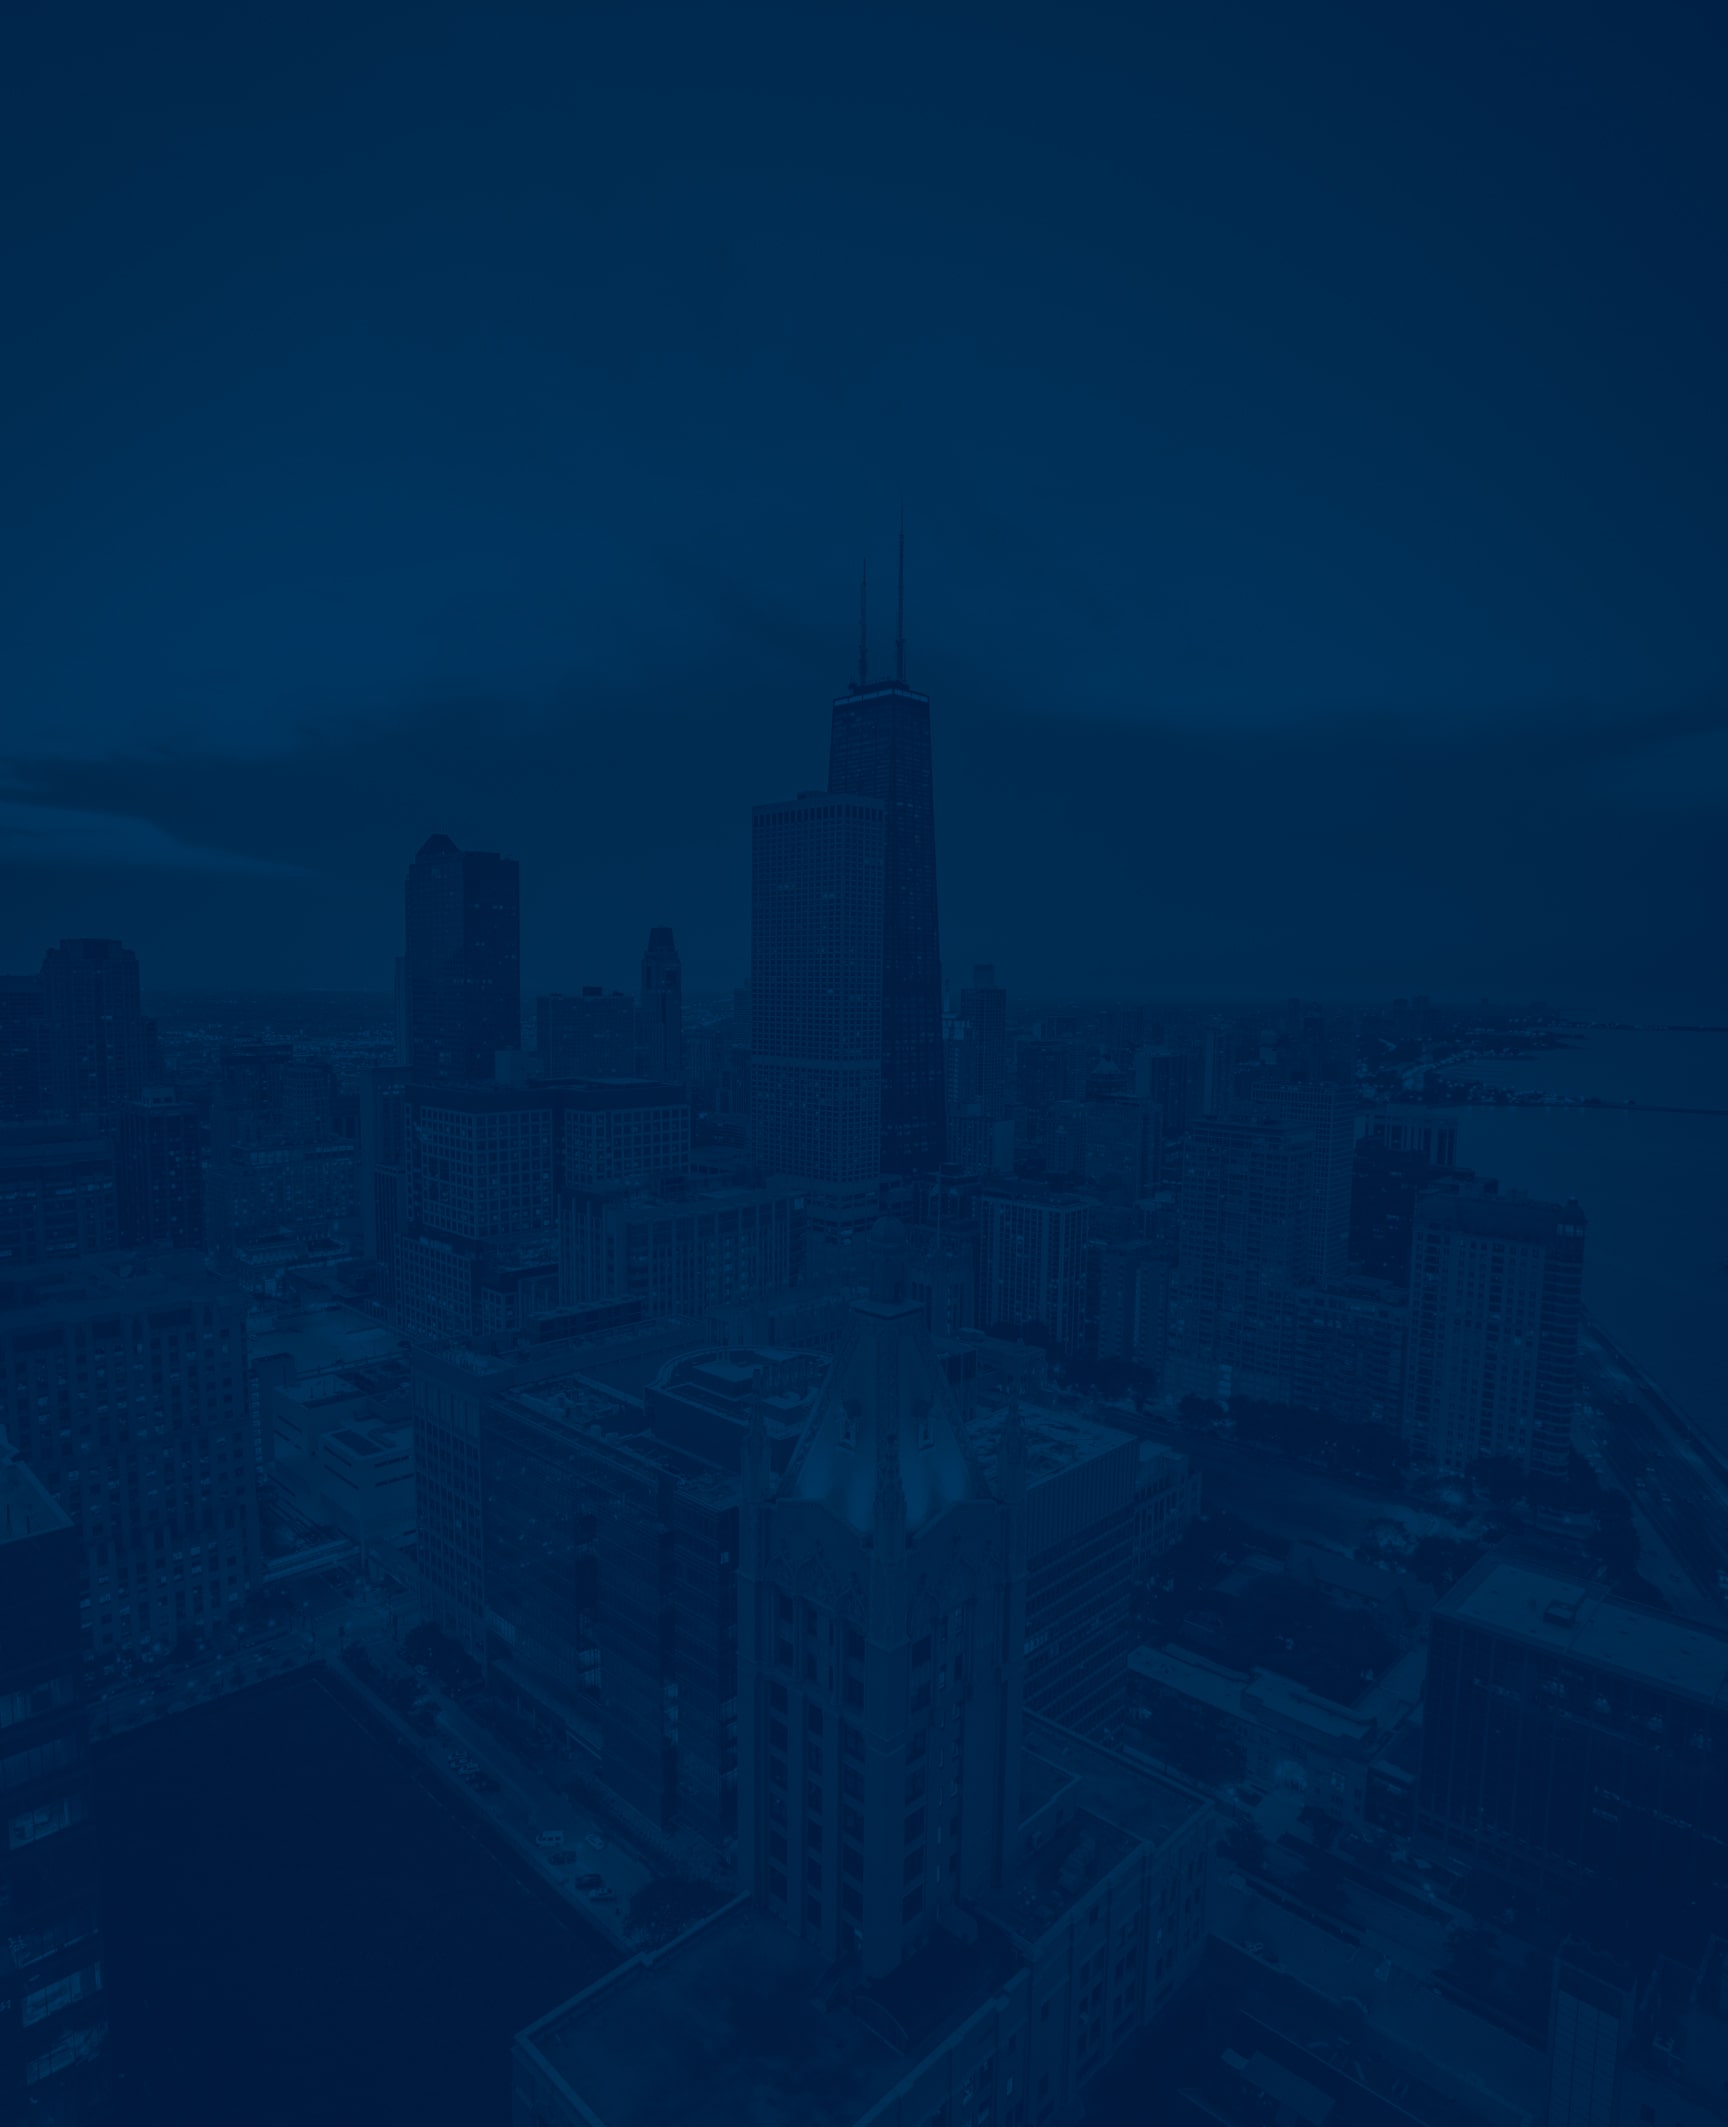 Chicago skyline background image